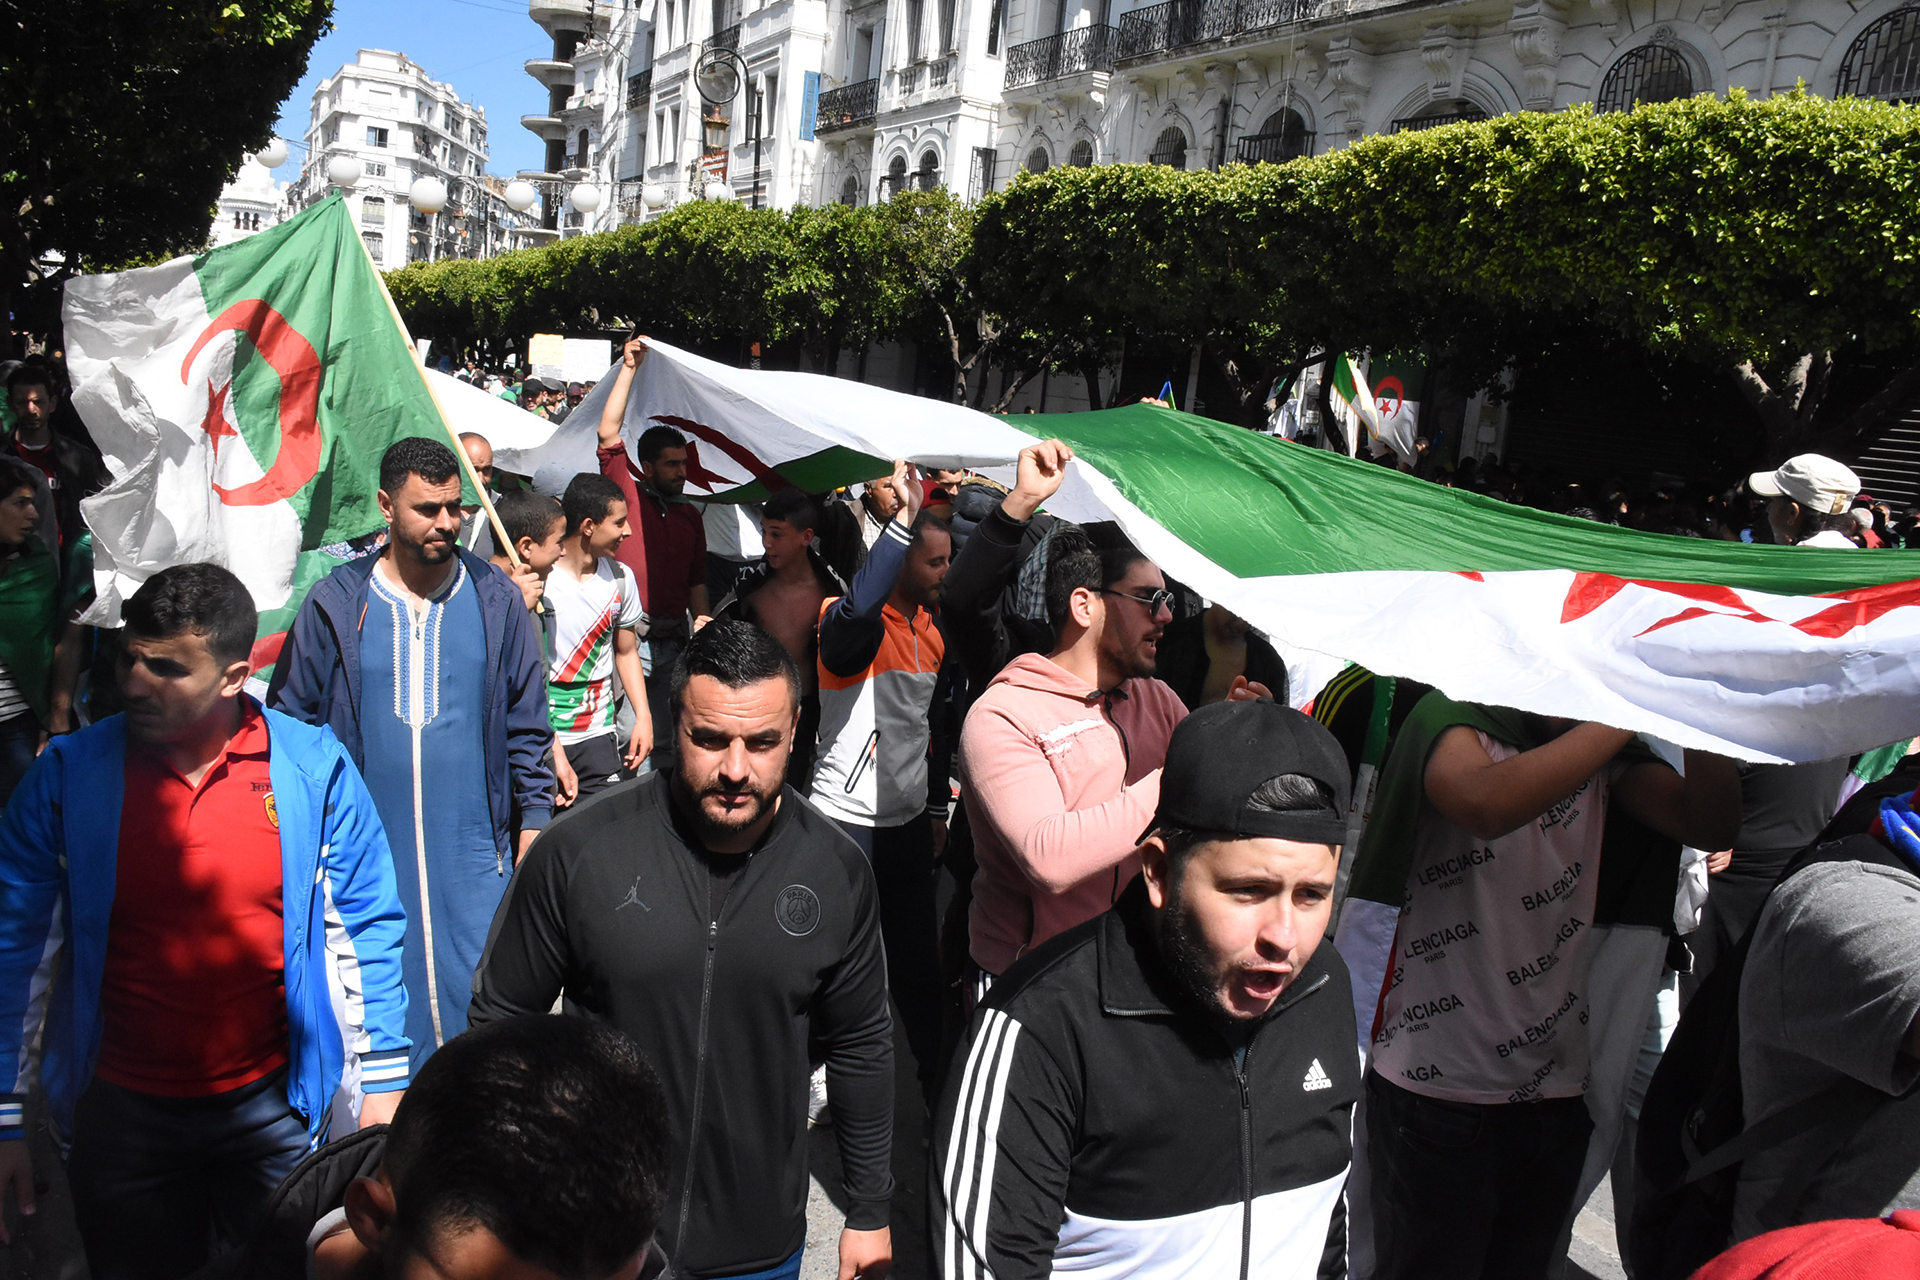 تطالب بالتغيير الجذري.. تجدد مسيرات الحراك الجزائري والرئيس تبون غير منزعج منها